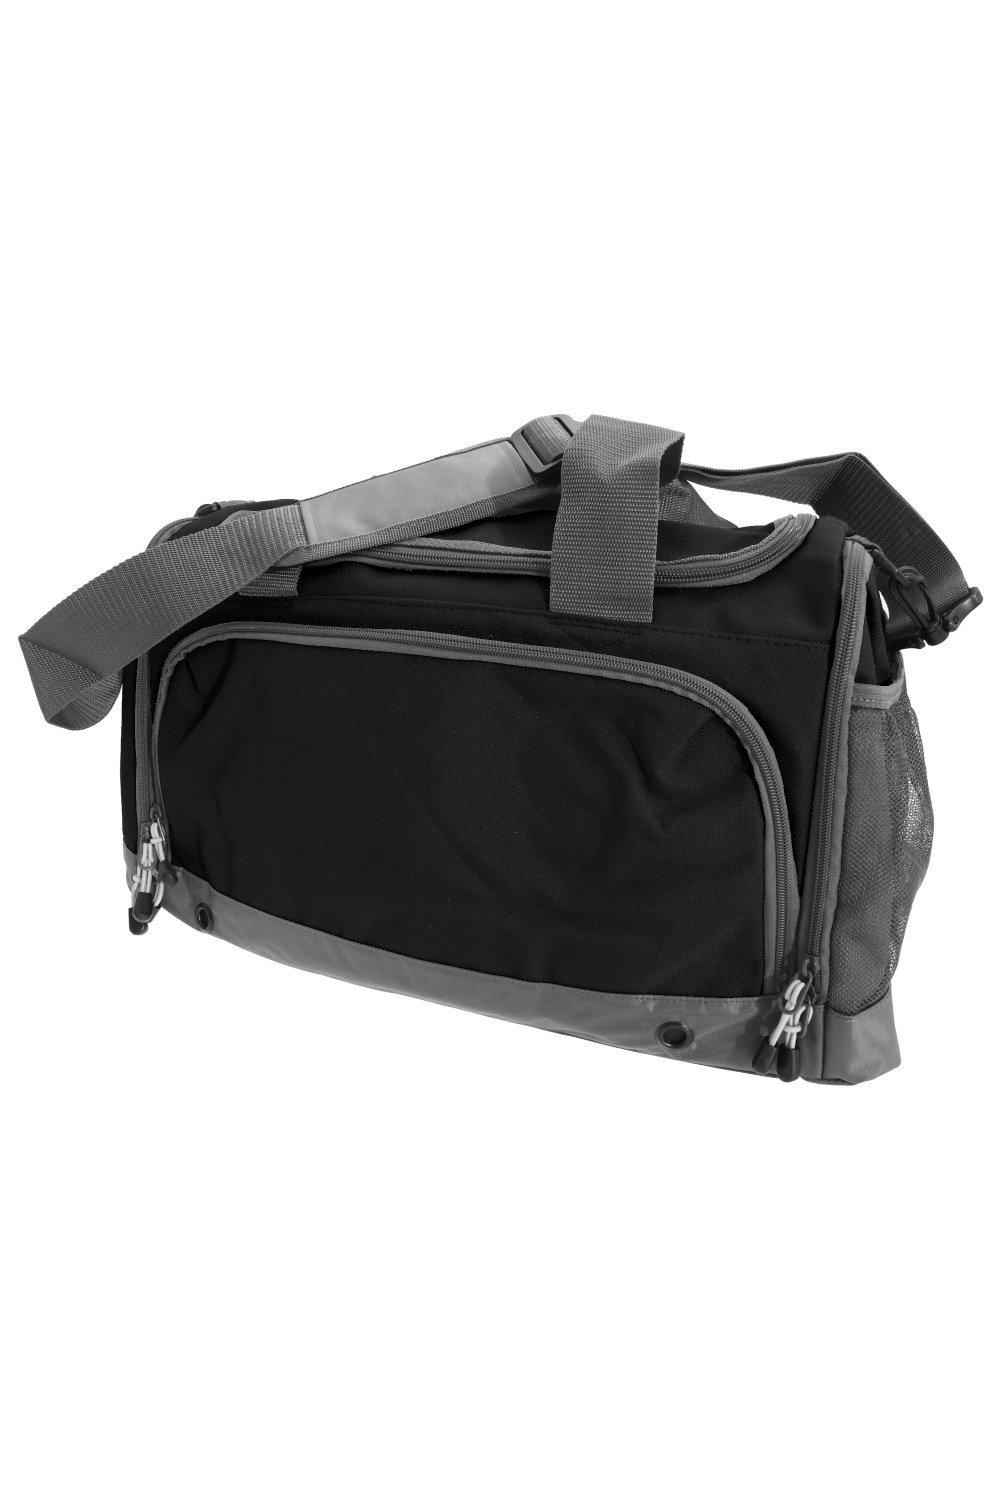 Спортивная сумка/спортивная сумка Bagbase, черный спортивная сумка janus orucase черный